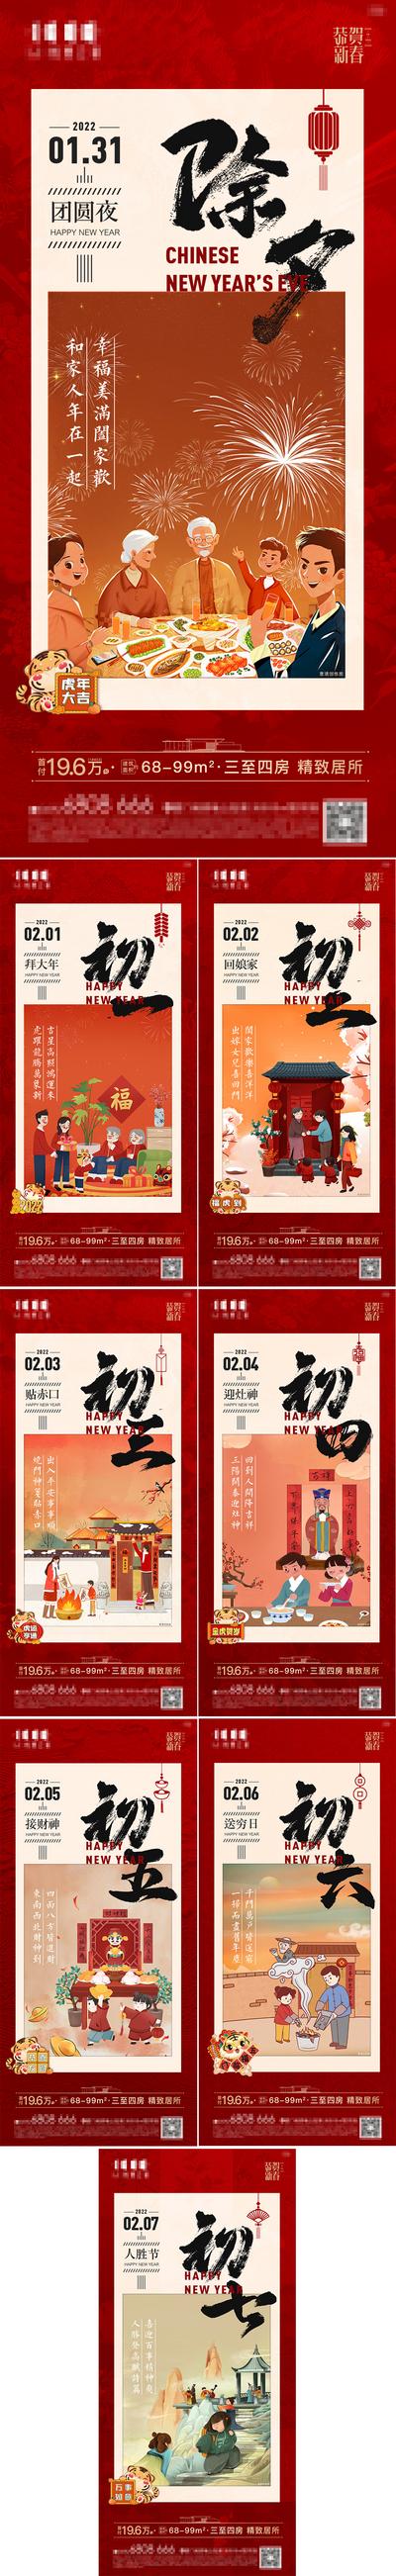 【南门网】广告 海报 新年 春节 初一 大年初一 拜年 初七 民俗 年味 系列 插画 手绘